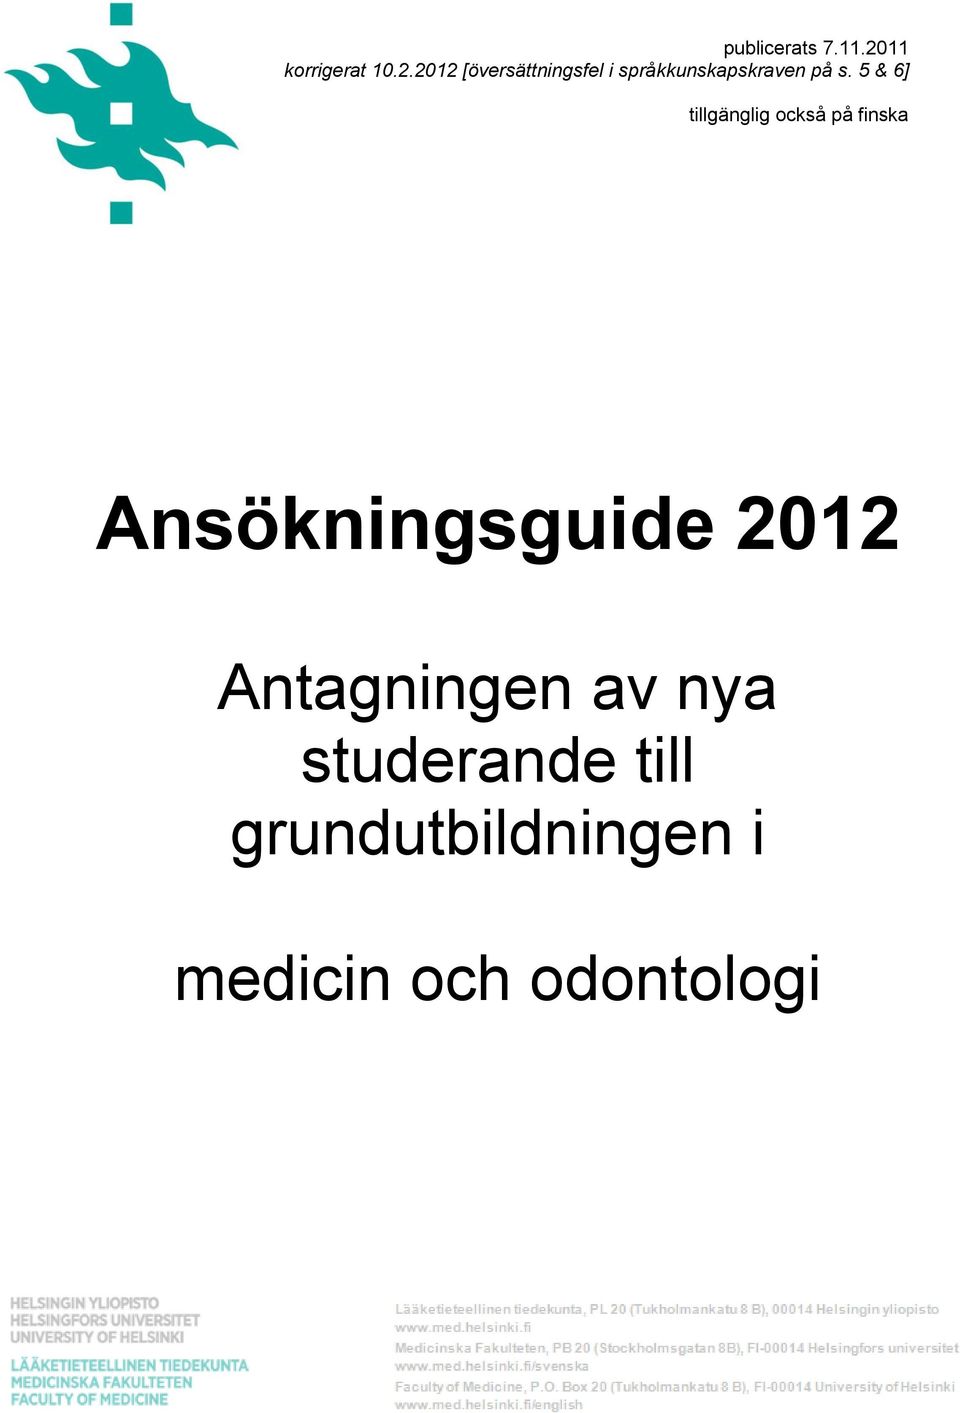 2012 [översättningsfel i språkkunskapskraven på s.